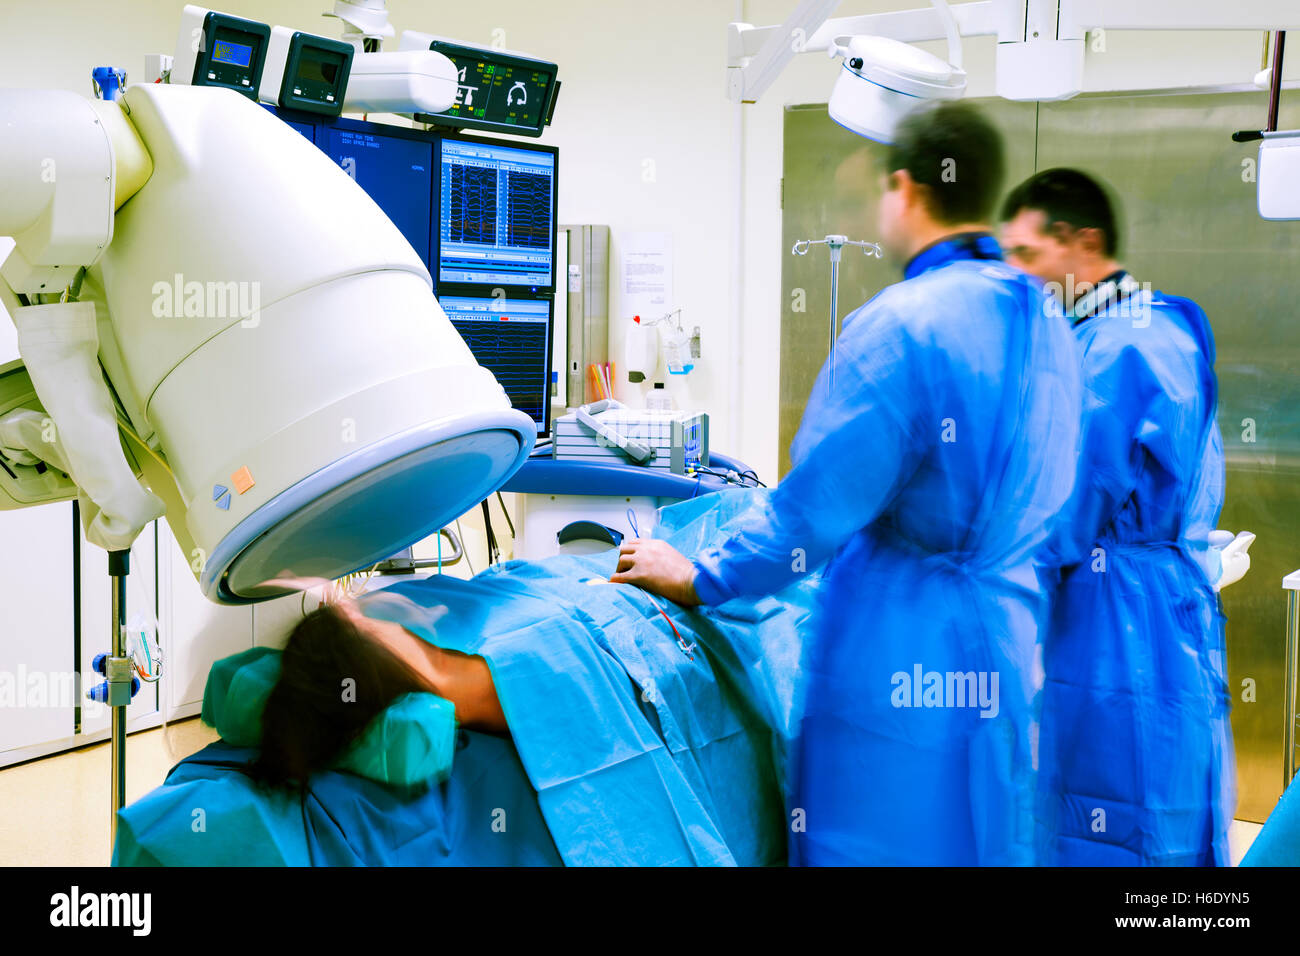 Procédure non invasive chirurgie cardiaque à l'hôpital avec deux médecins et un patient dans le cadre d'un scanner. Banque D'Images